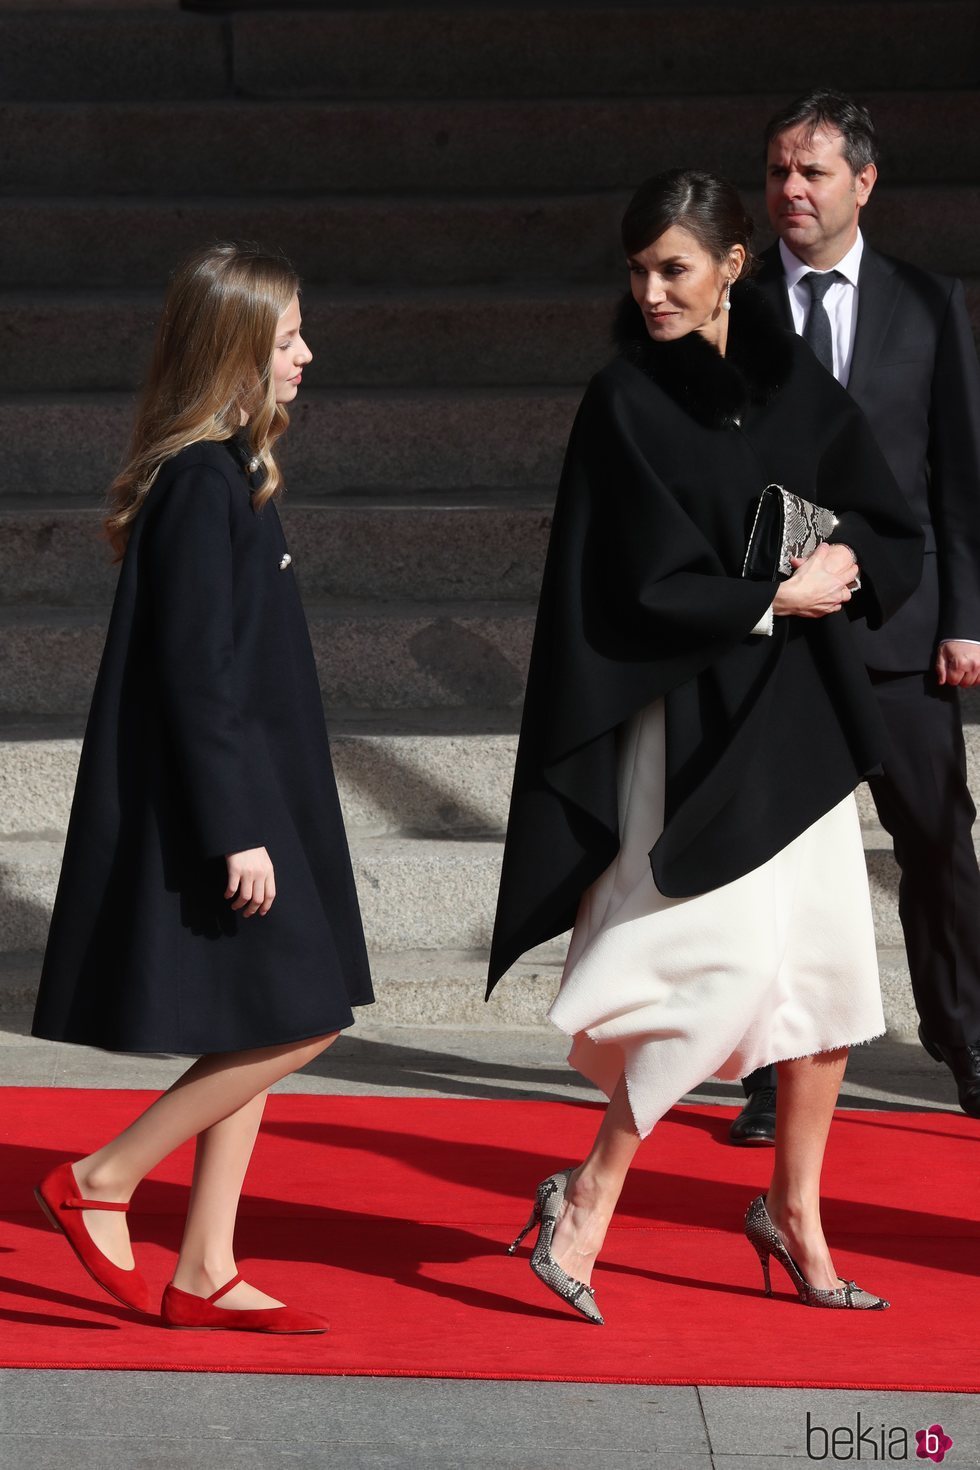 La Reina Letizia habla con la Princesa Leonor llegando a la Apertura de la XIV Legislatura